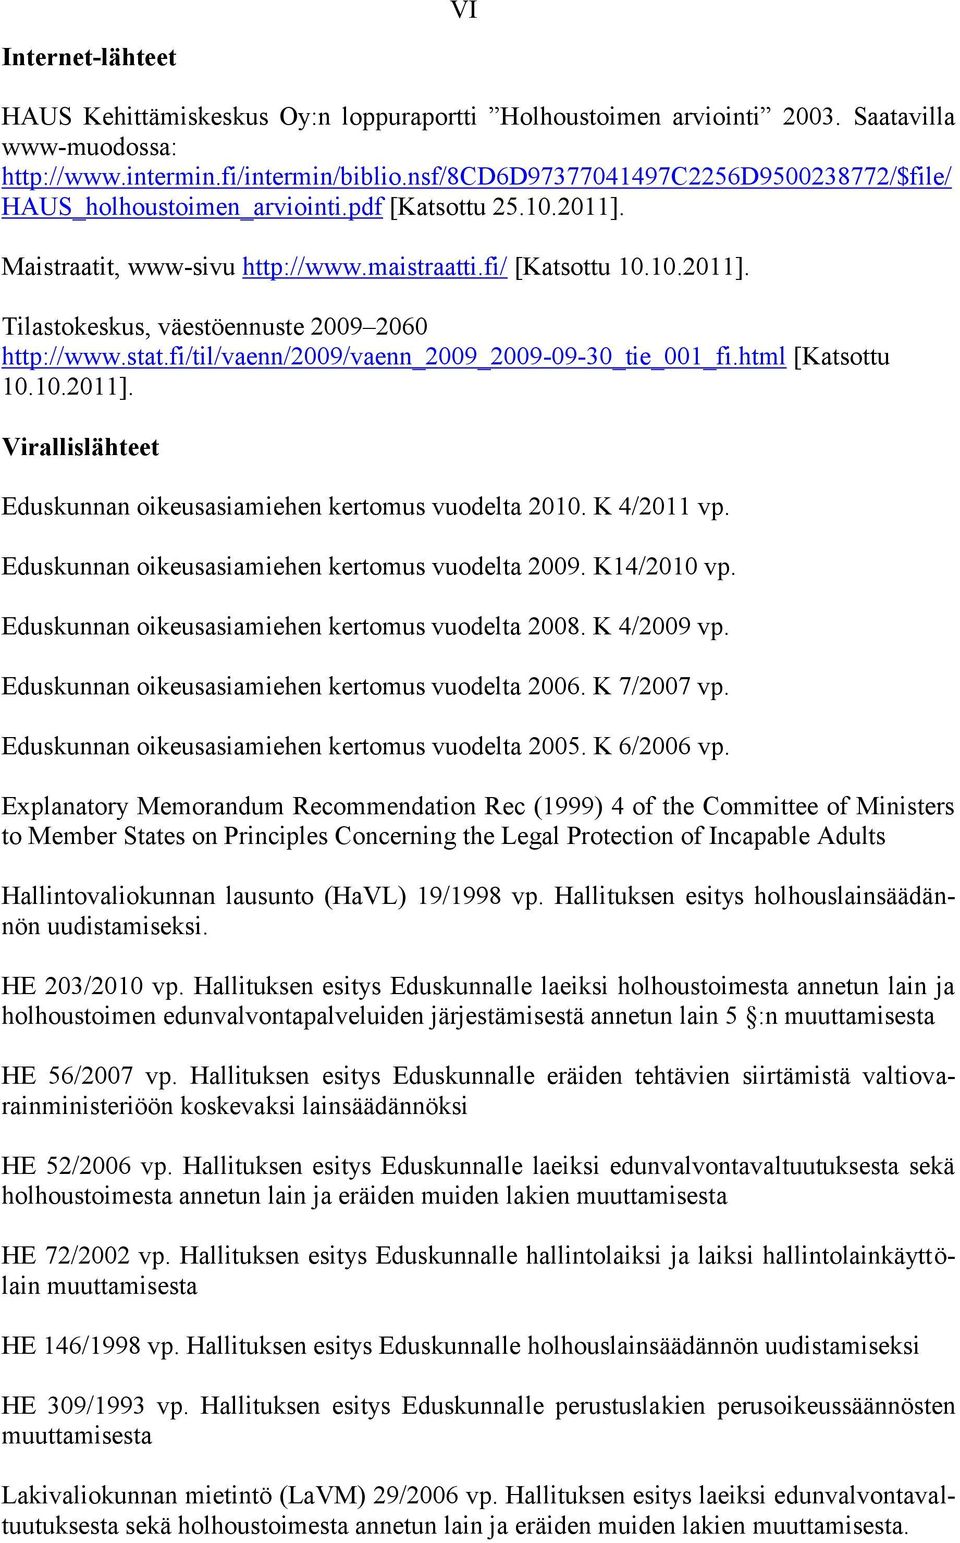 stat.fi/til/vaenn/2009/vaenn_2009_2009-09-30_tie_001_fi.html [Katsottu 10.10.2011]. Virallislähteet Eduskunnan oikeusasiamiehen kertomus vuodelta 2010. K 4/2011 vp.